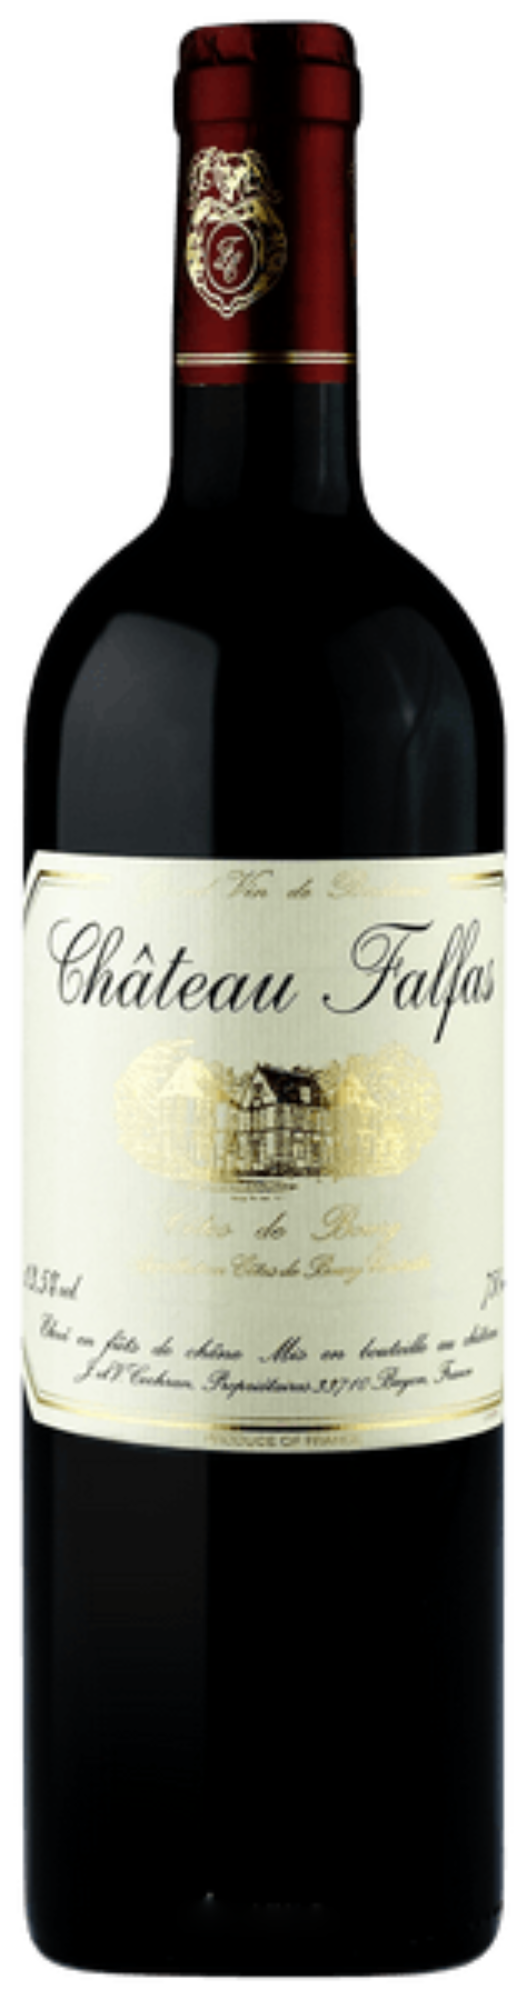 Château Falfas Côtes de Bourg 2017